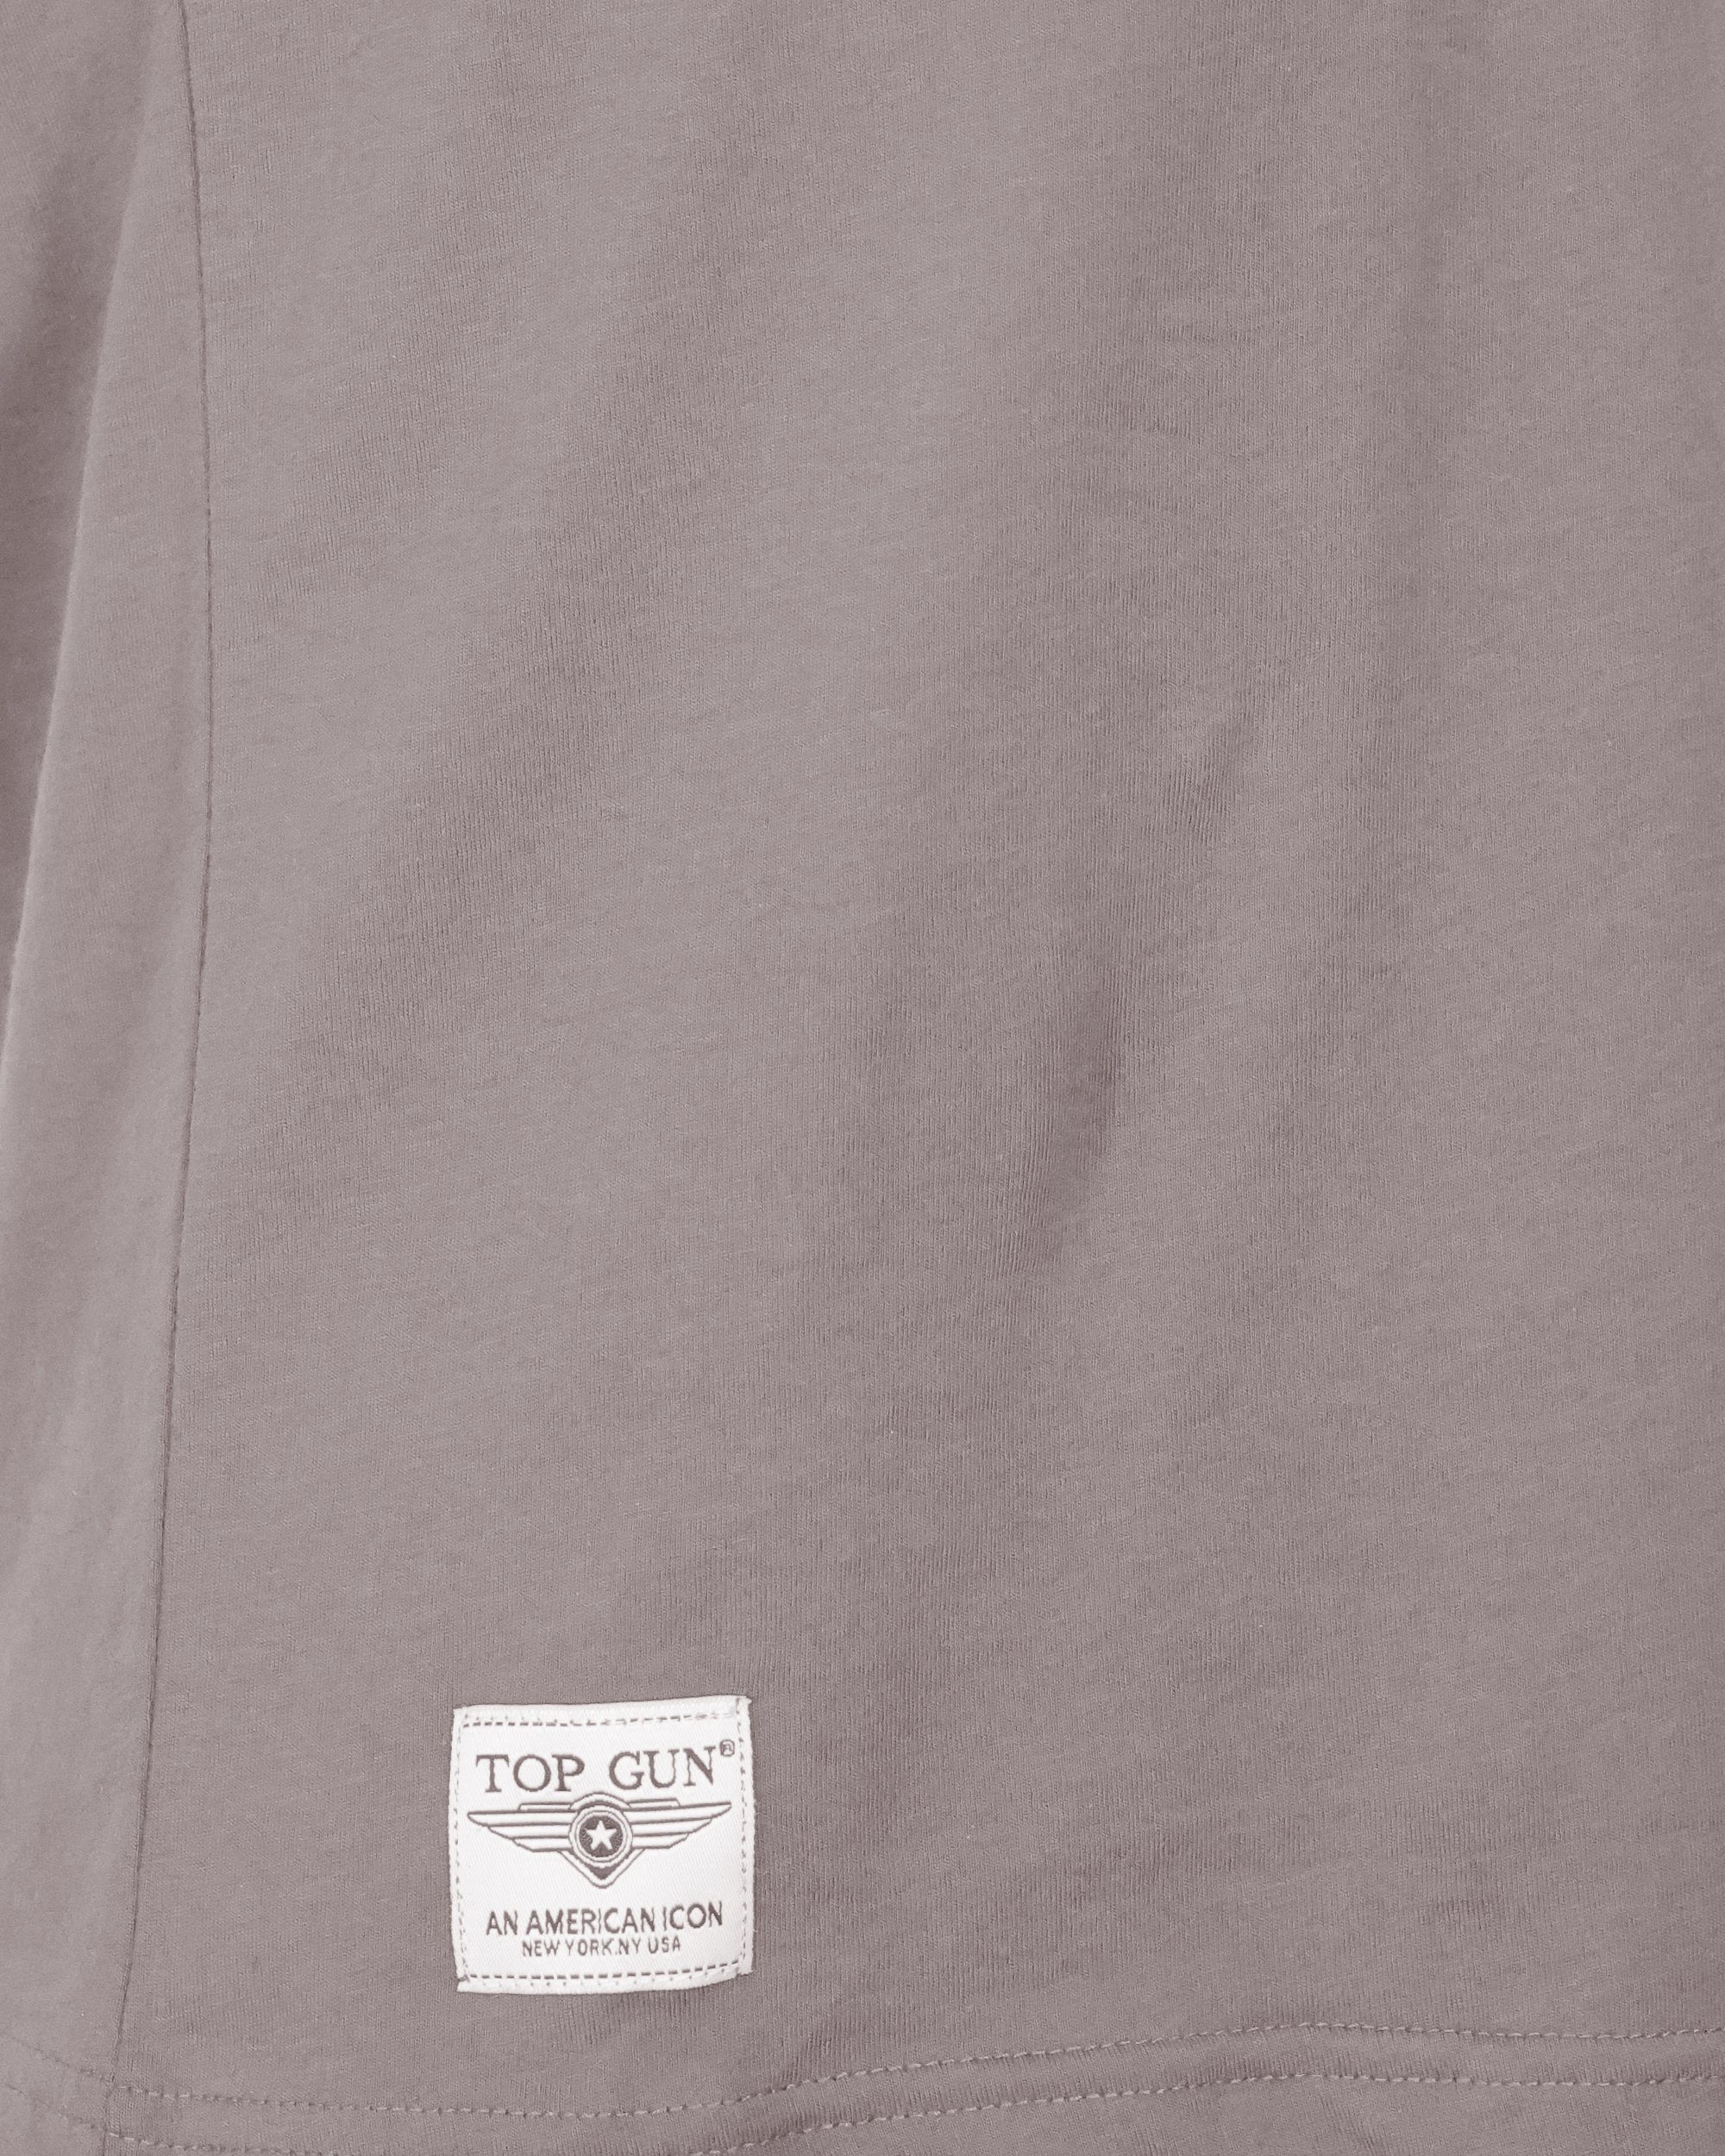 GUN TOP grey TG20213037 T-Shirt